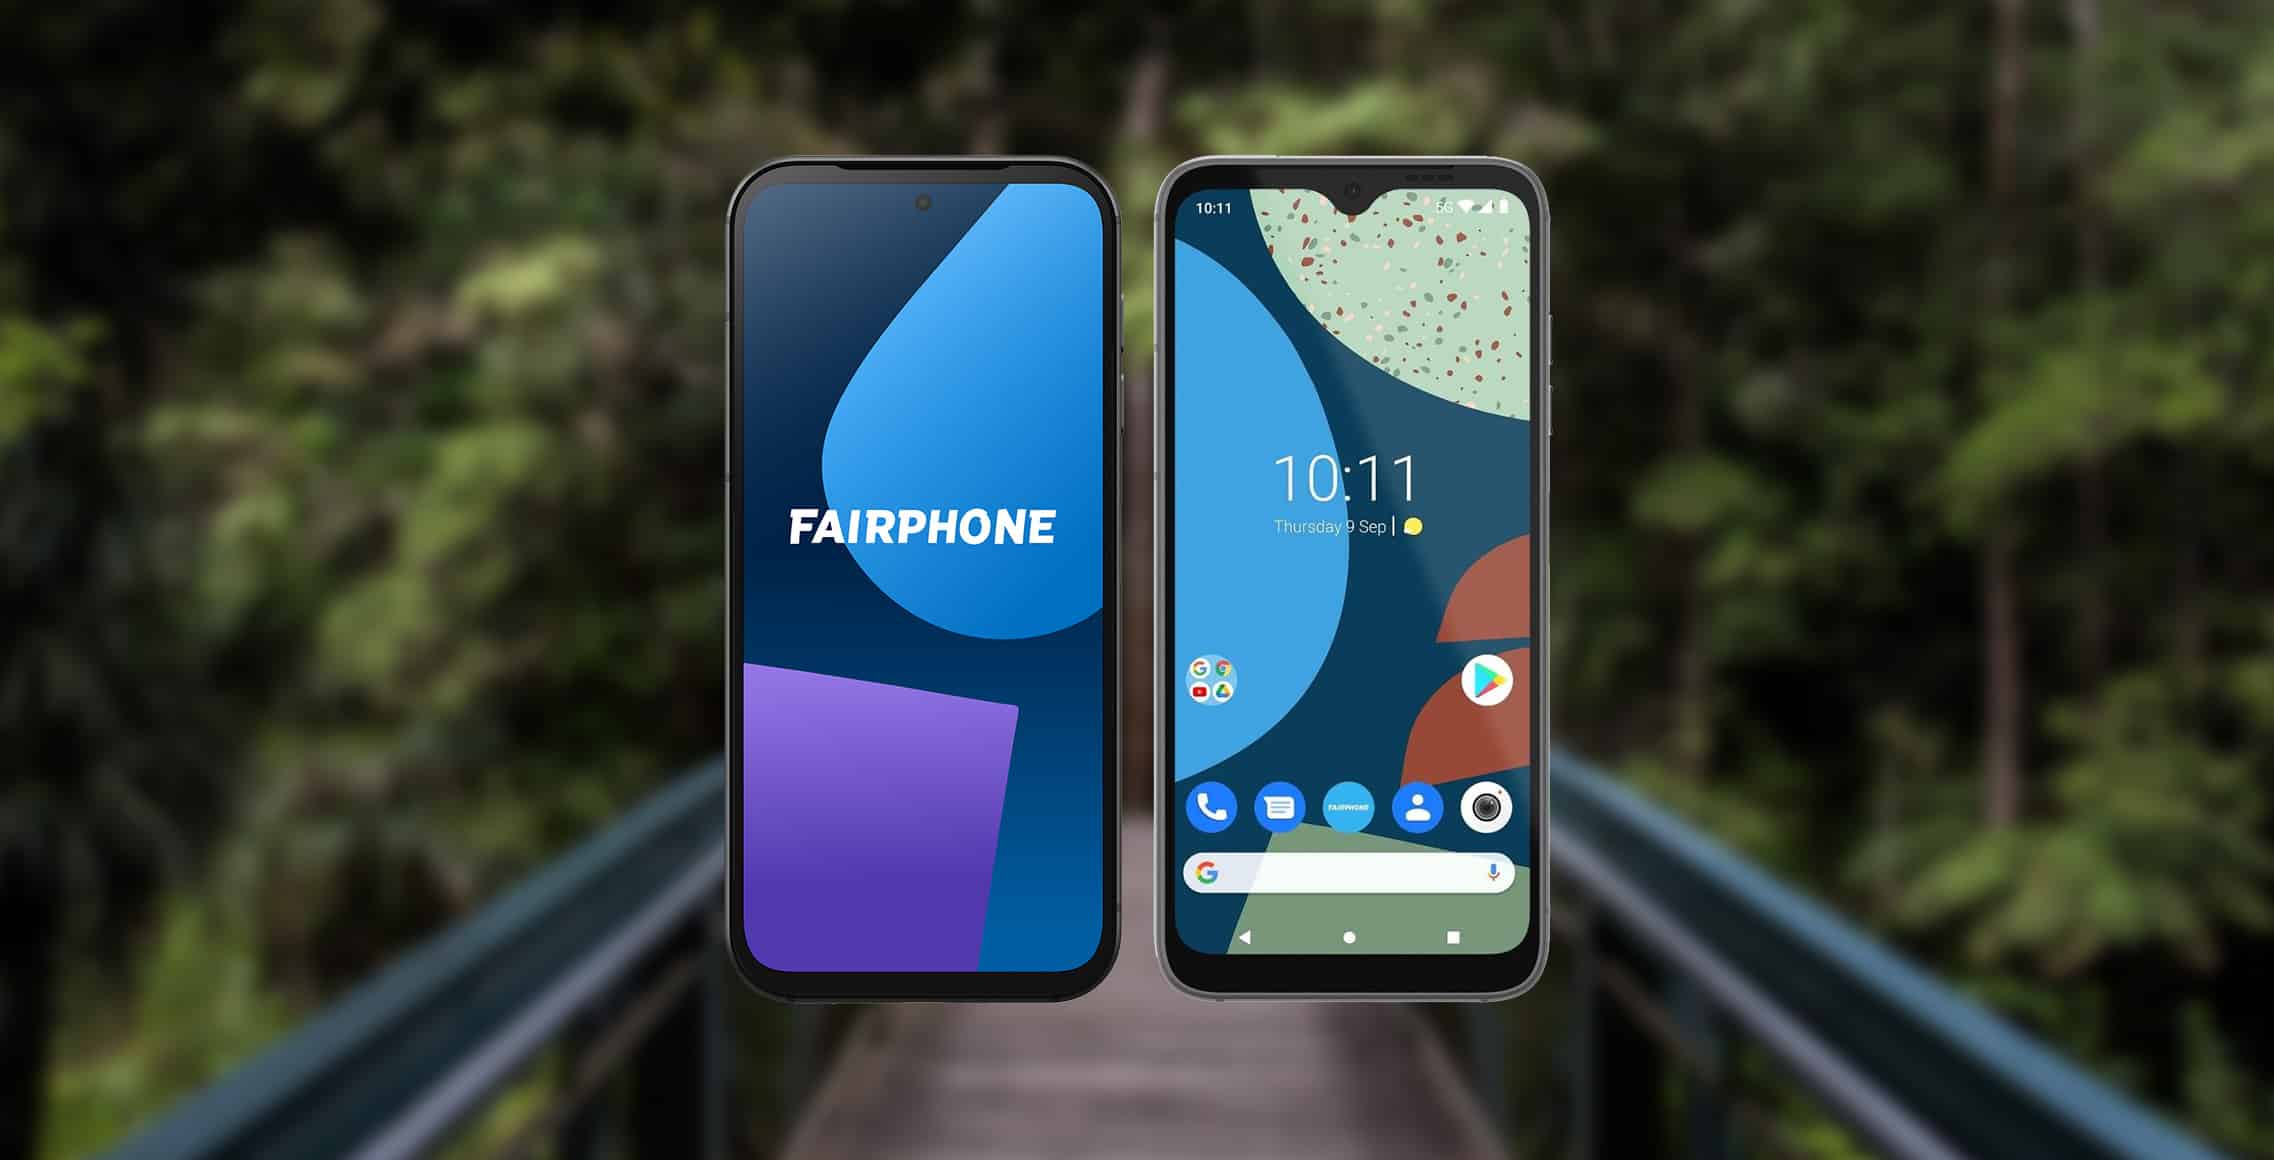 fairphone 5 versus fairphone 4 vergelijking